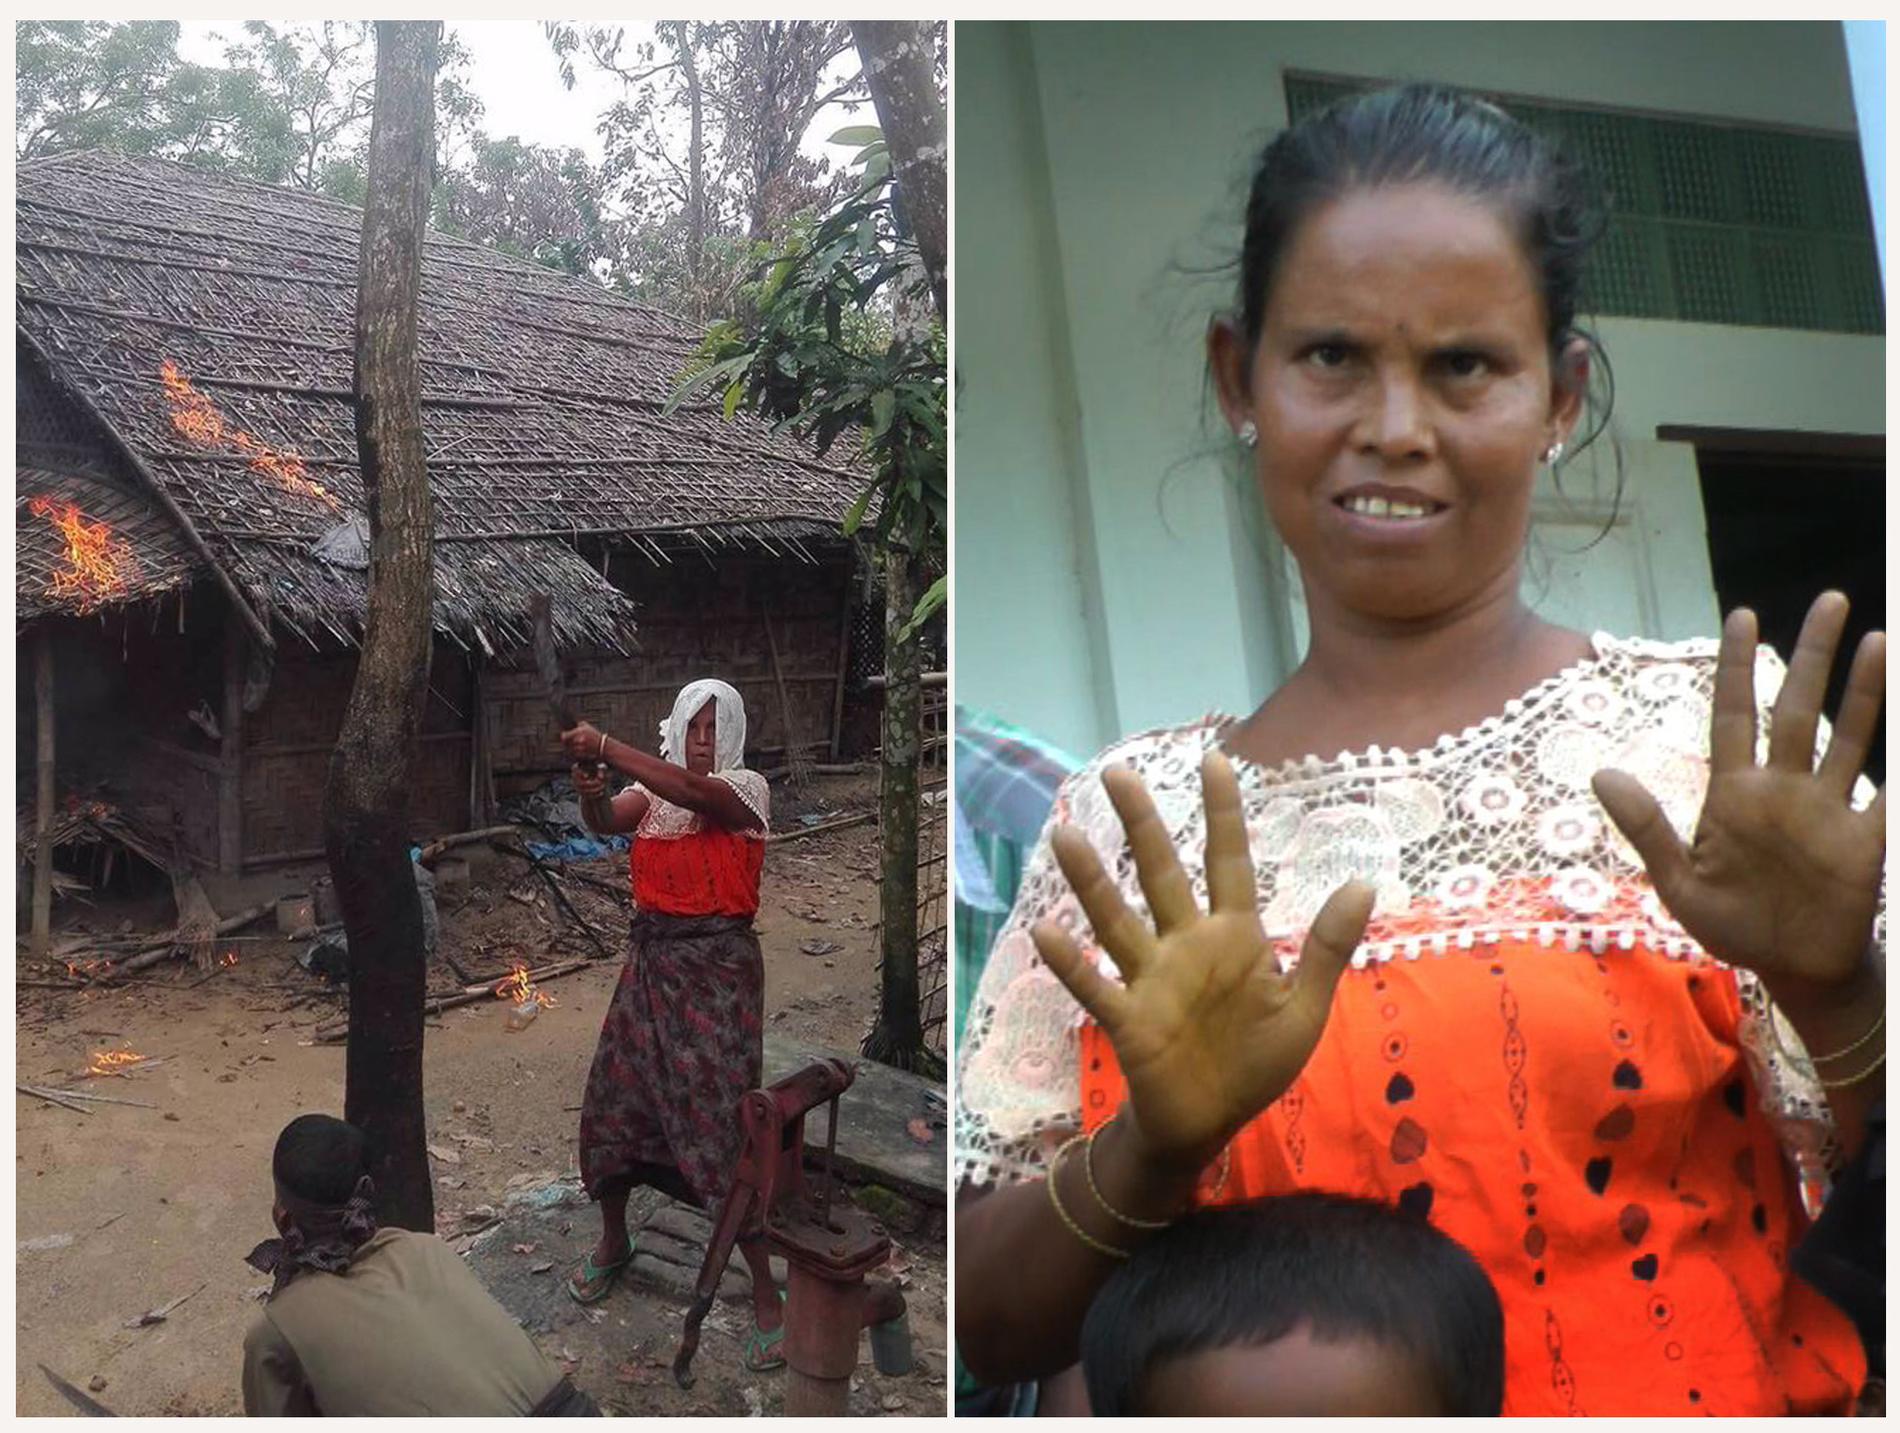 Bilden till vänster uppgavs visa hur en kvinna ur rohingya-befolkningen satte eld på sitt eget hus, i syfte att skylla dådet på regeringen. Men när AP:s journalister besökte området visade sig kvinnan vara hindu. 